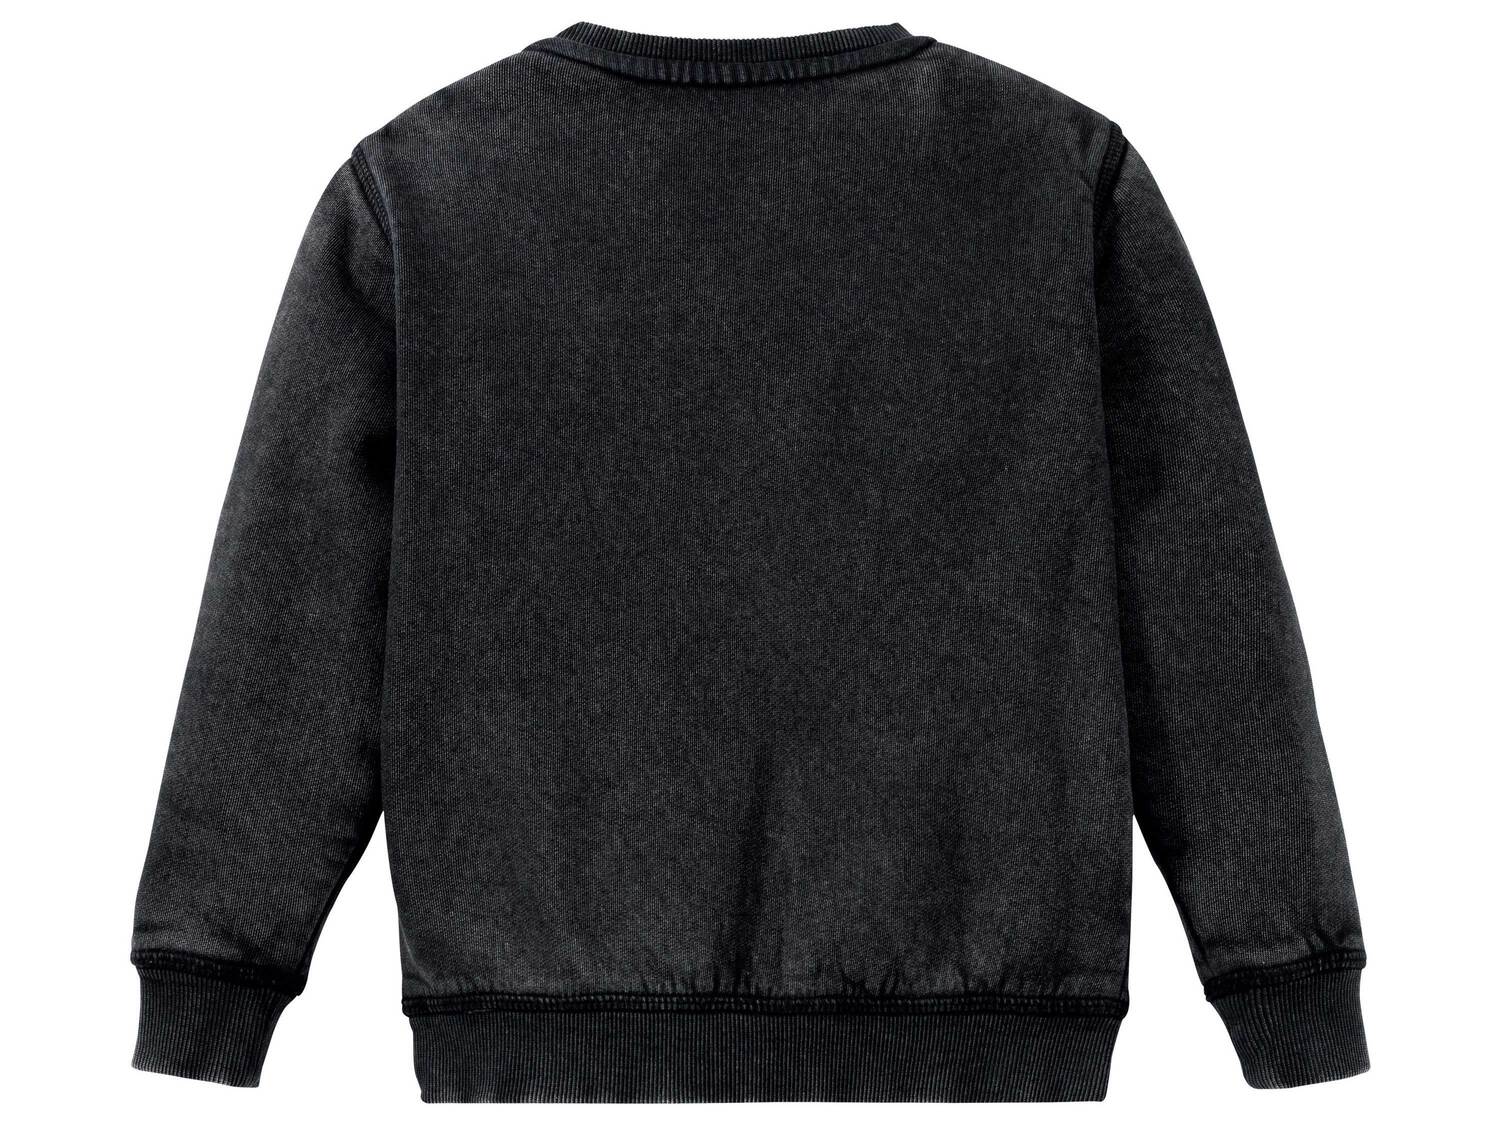 Bluza dresowa Lupilu, cena 19,99 PLN 
- rozmiary: 86-116
- wysoka zawartość bawełny
Dostępne ...